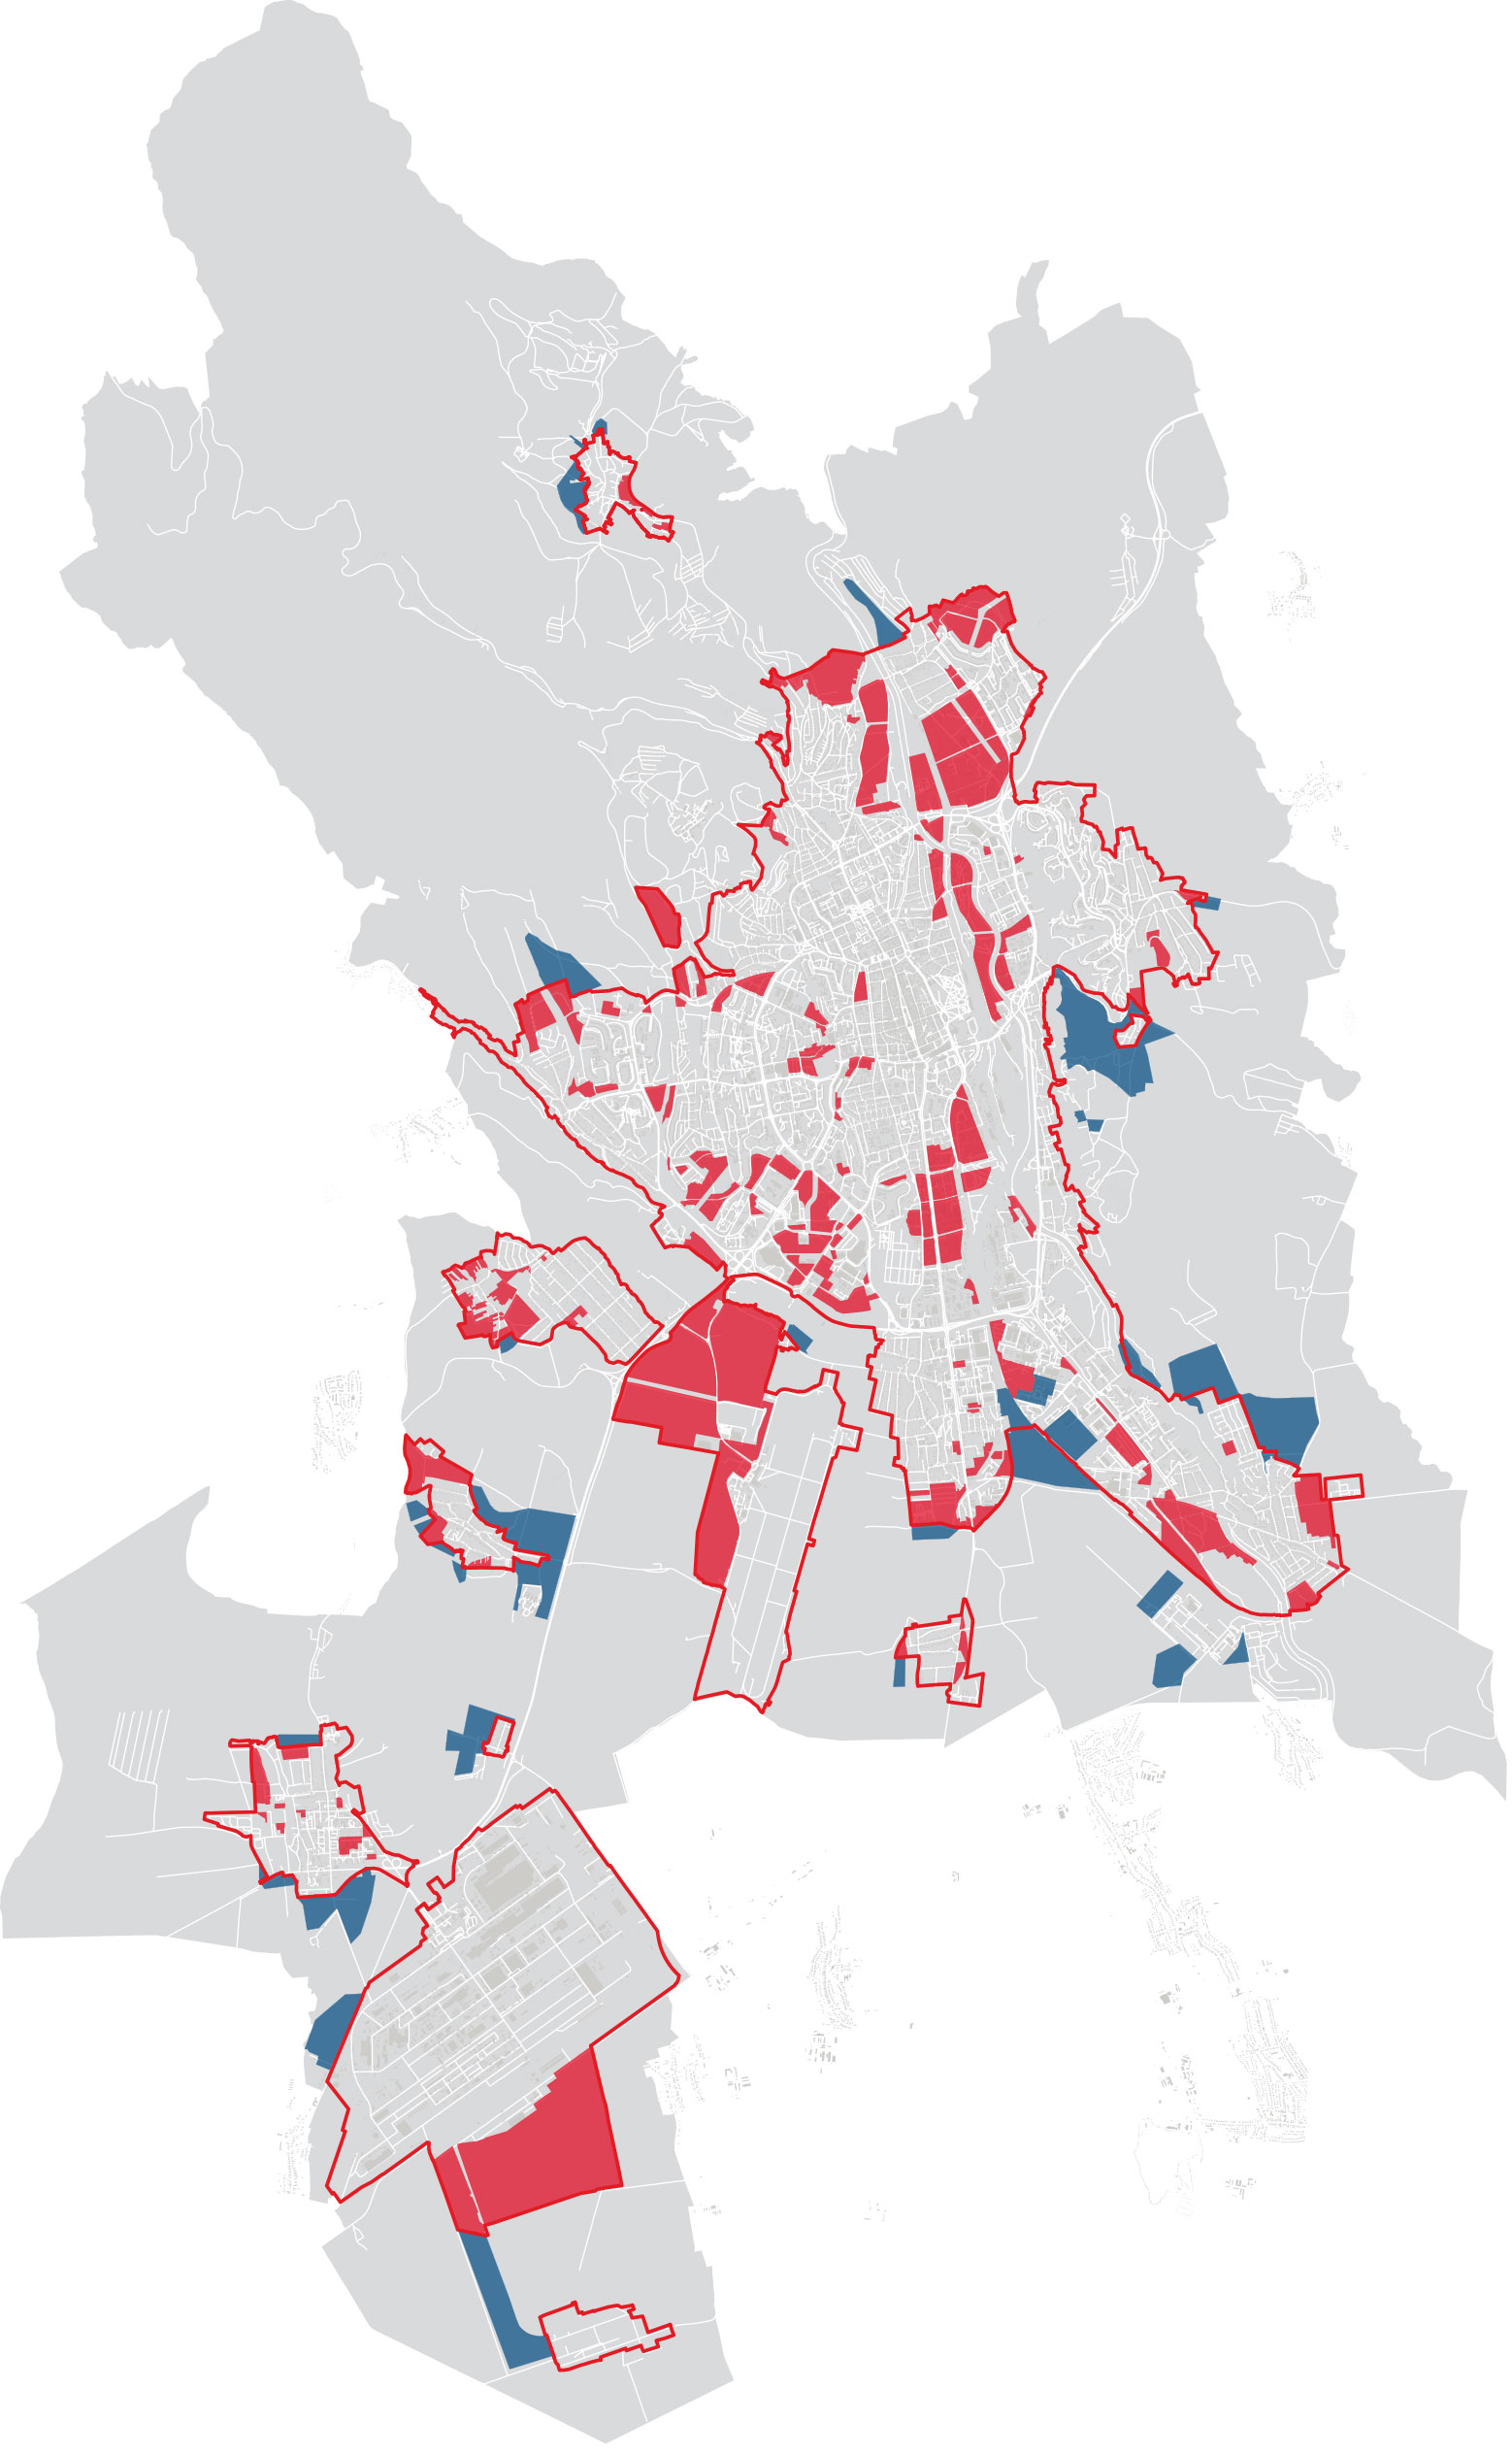 Variant A kompaktného mesta. Červené plochy predstavujú územie začlenené do rozvoja modré naopak vylúčené z rozvoja. Červená línia predstavuje neprekročiteľnú hranicu kompaktného mesta.